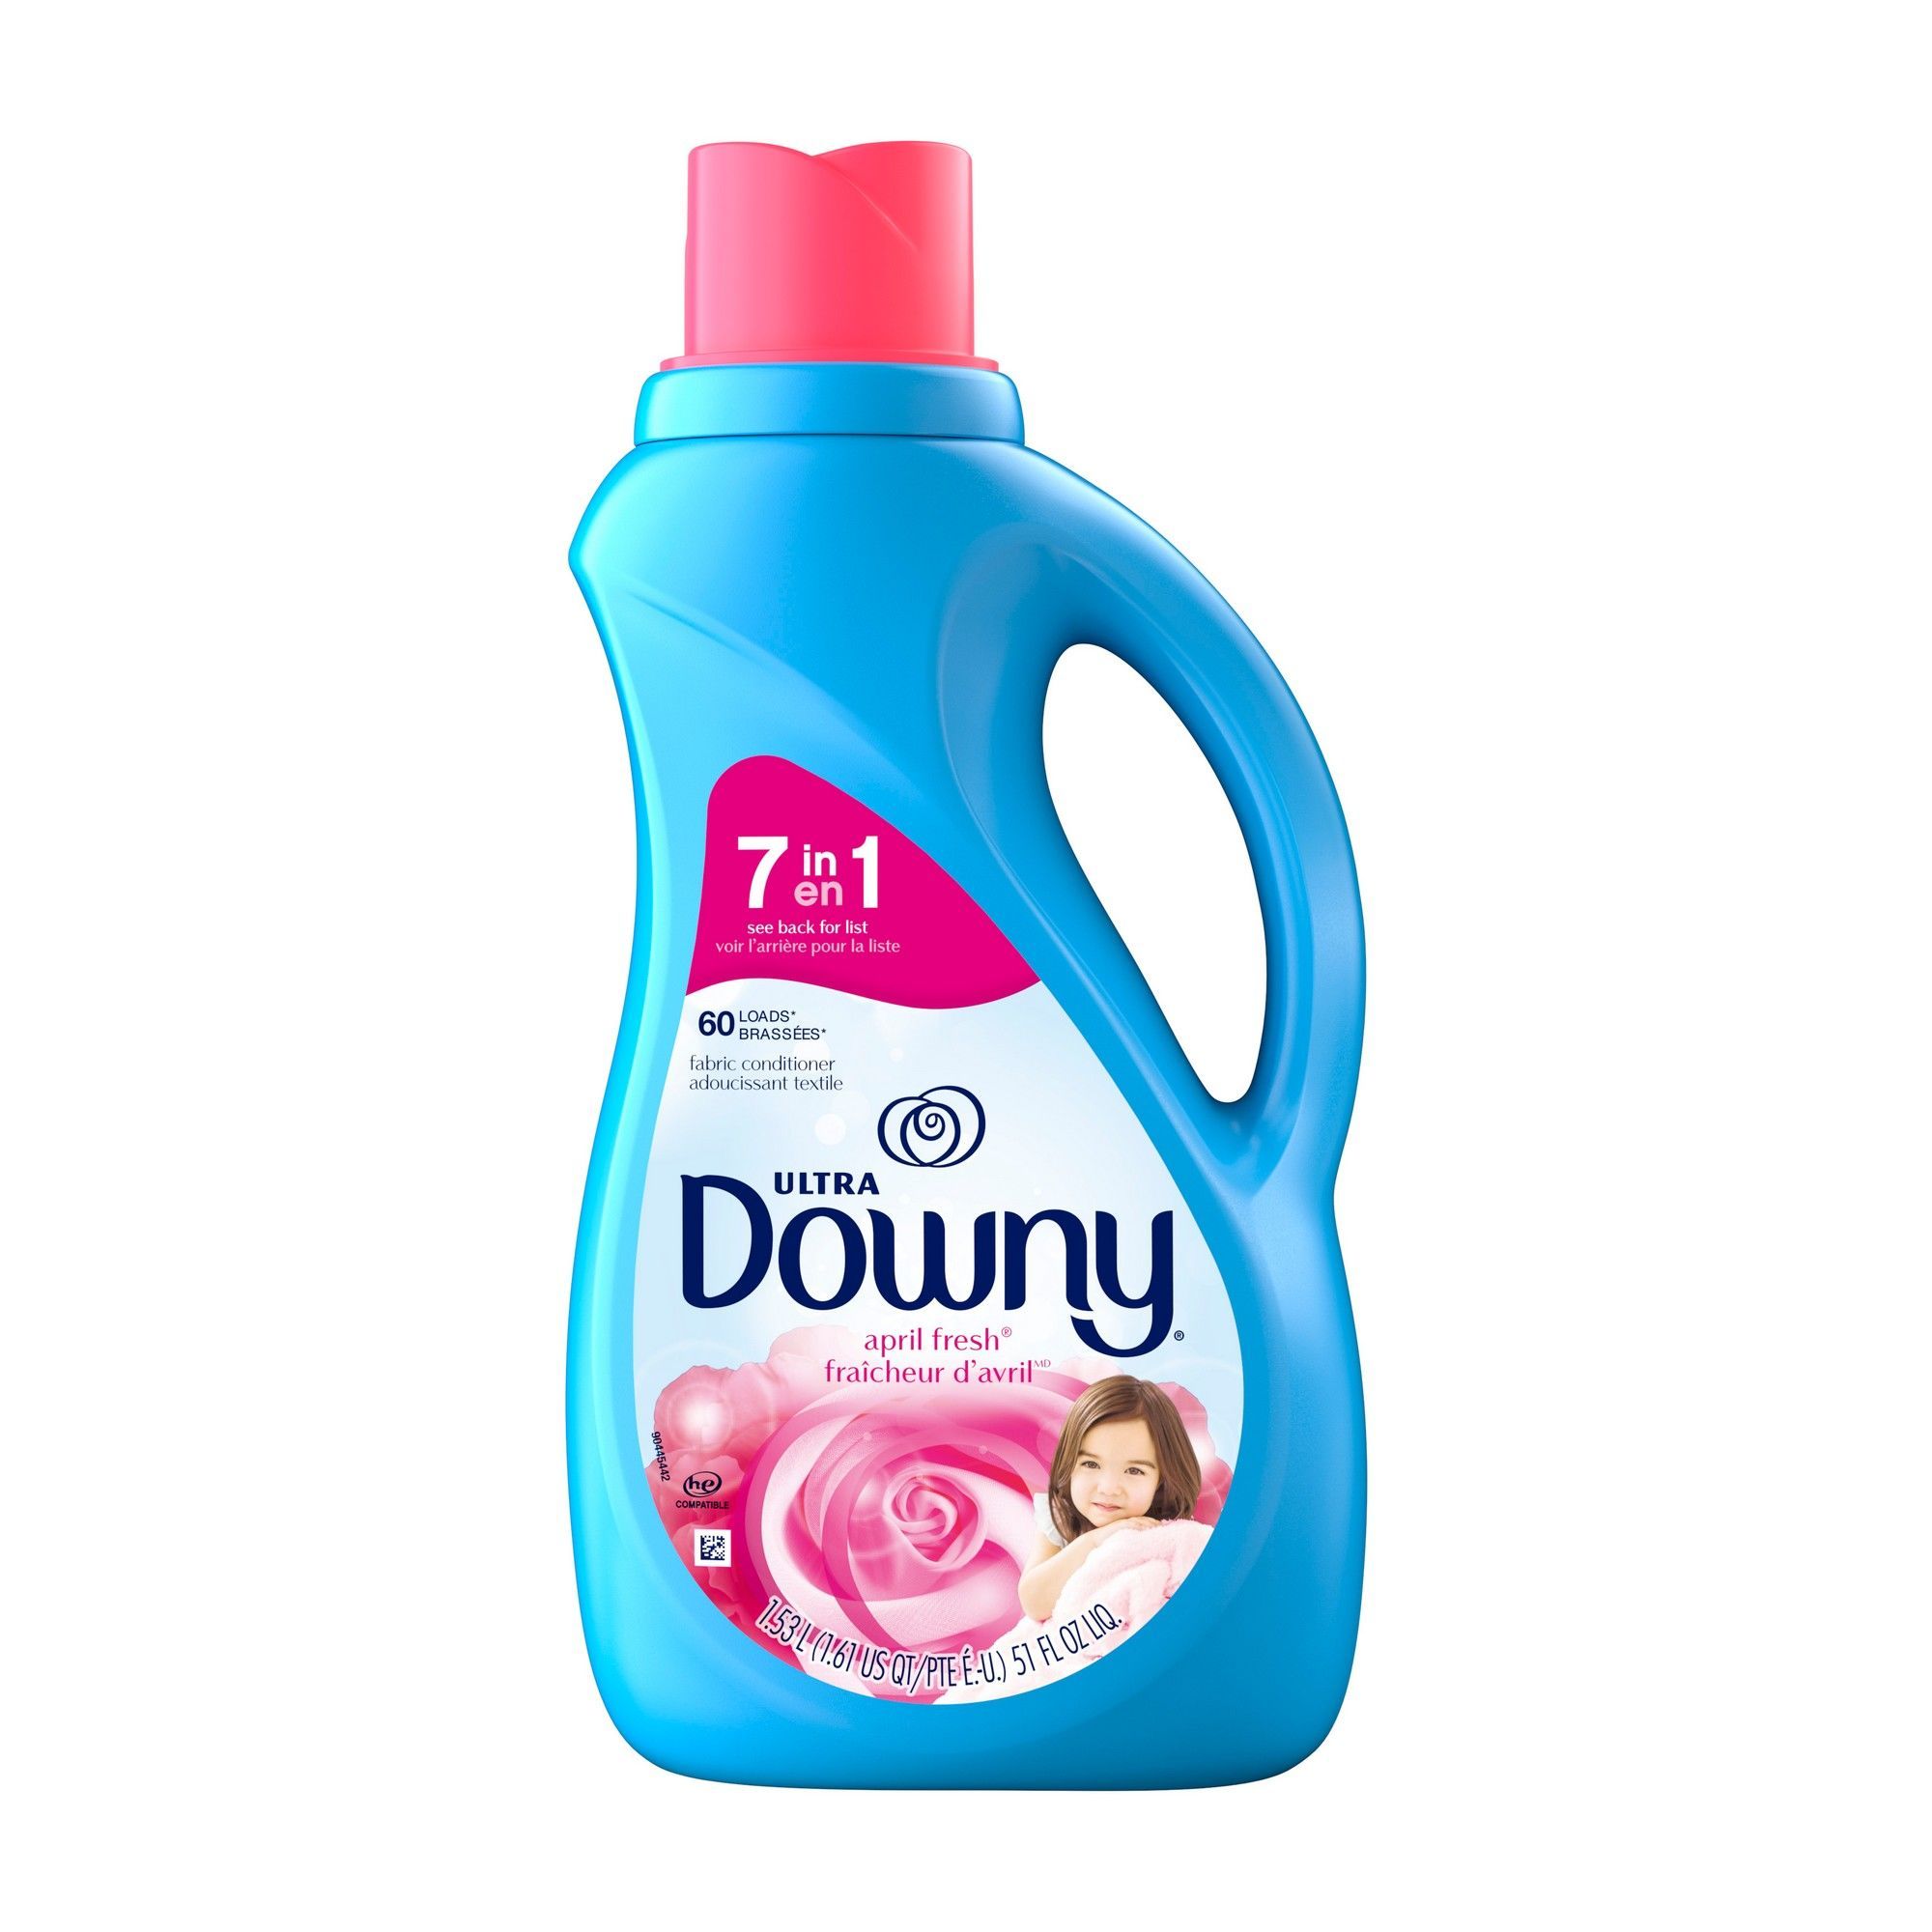 Adoucissant liquide Downy Ultra, fraîcheur d'avril, 1,53 l (60 brassées) de  DOWNY